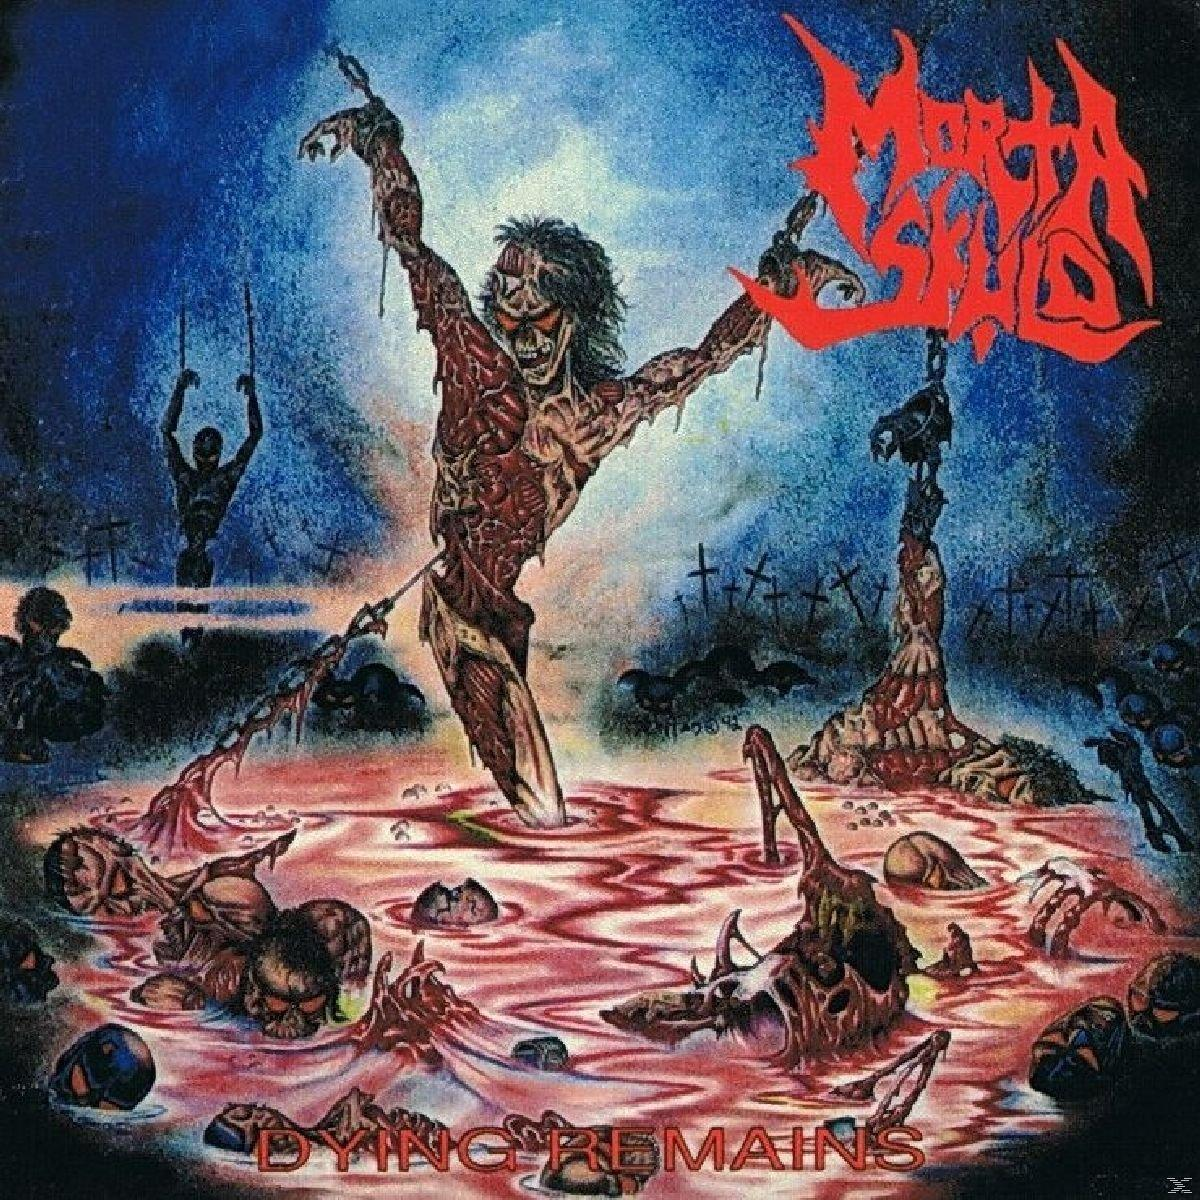 Morta Skuld - - Dying Remains (Vinyl)